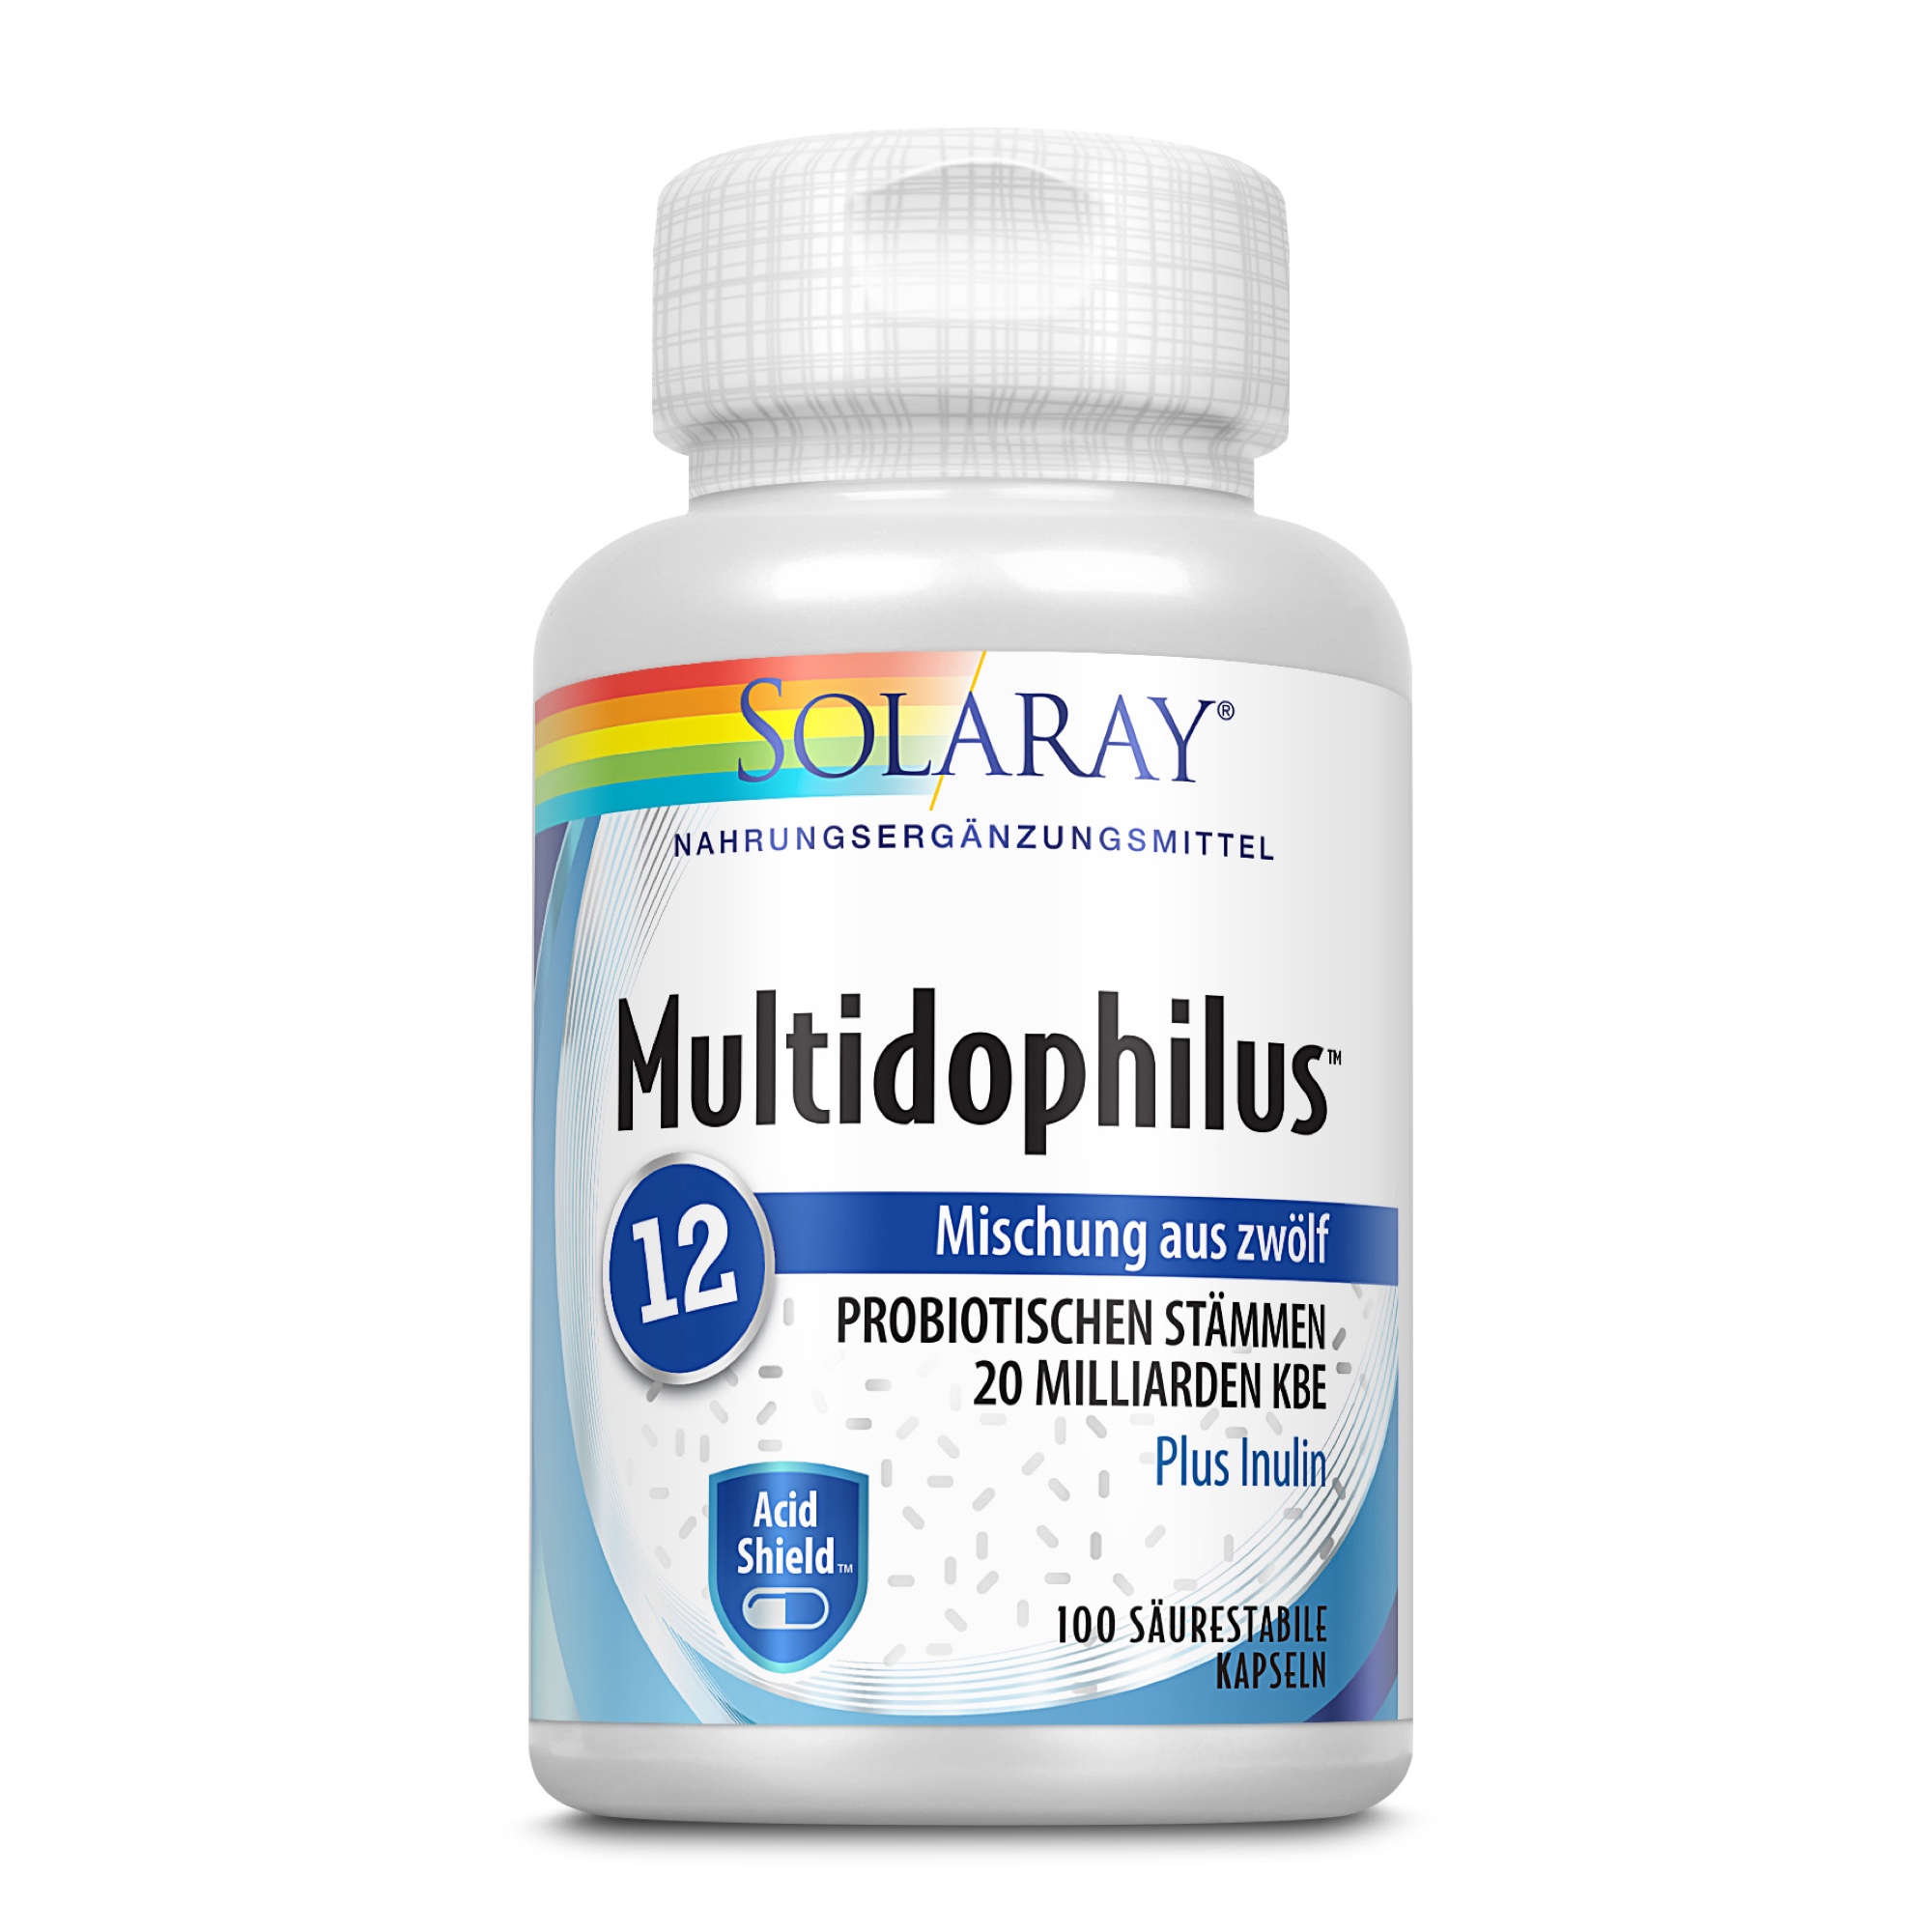 Multidophilus 12 säurestabil I laborgeprüft